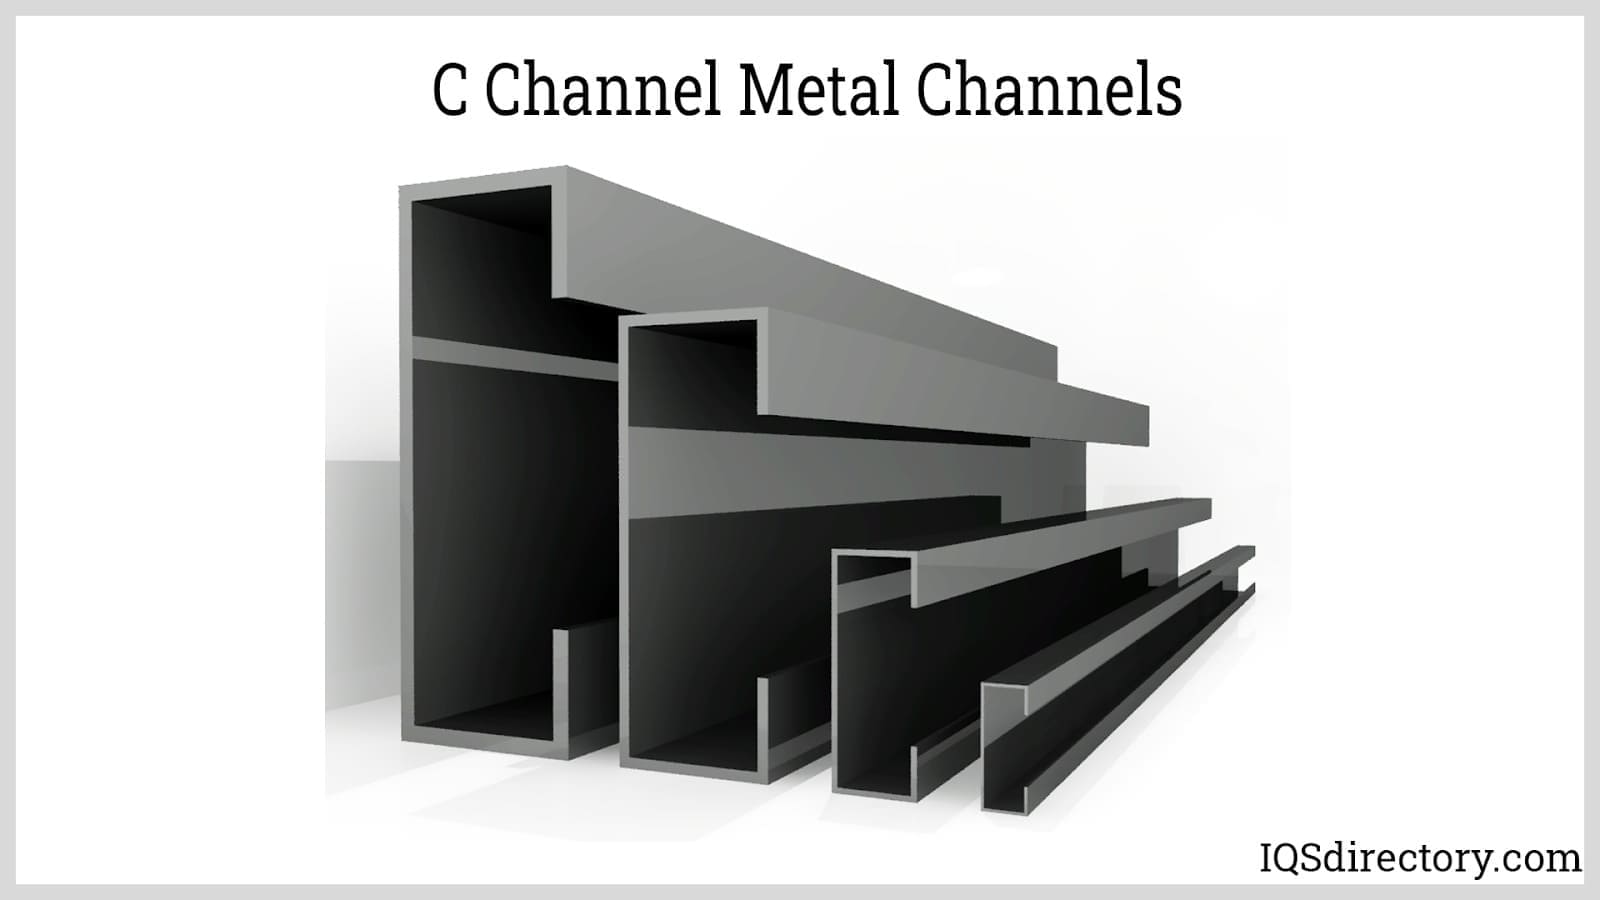 C-Channel Metal Channels